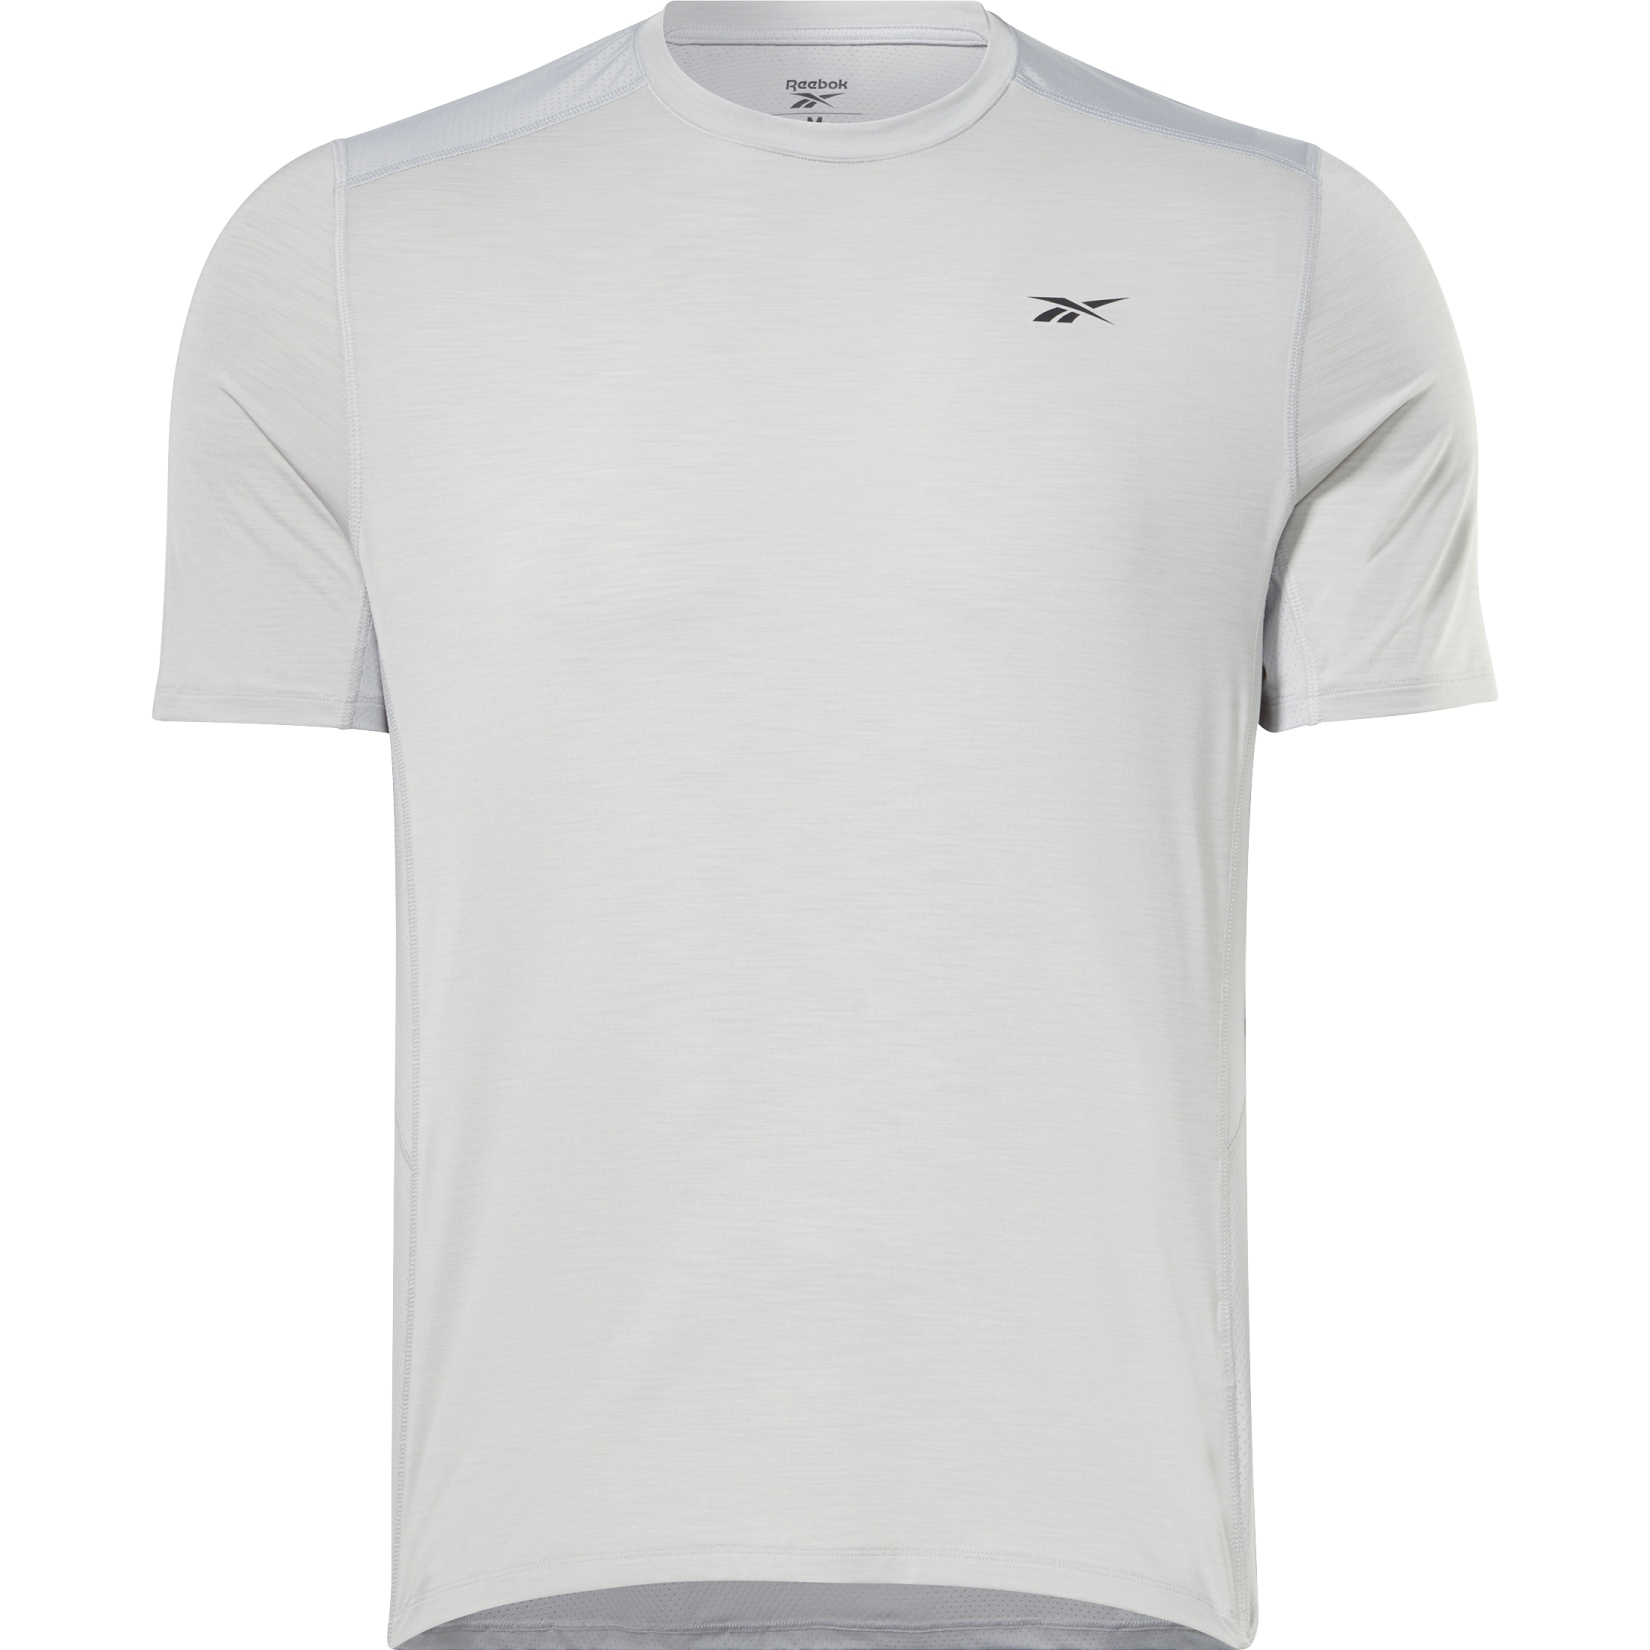 Produktbild von Reebok TS AC Solid Athlete T-Shirt - pure grey